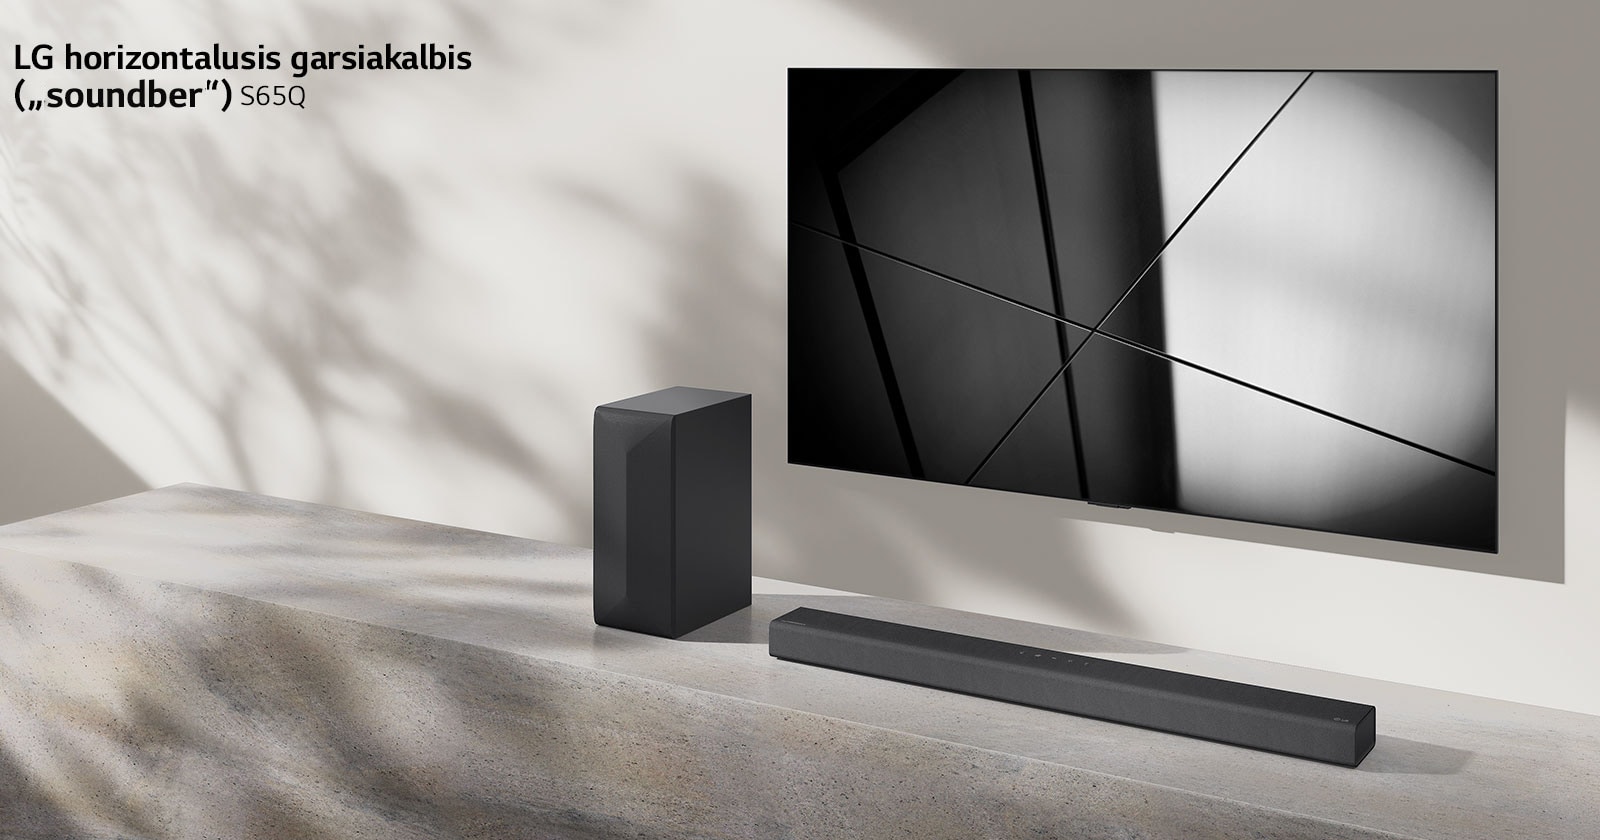 LG horizontalusis garsiakalbis („Sound Bar“) S65Q ir LG televizorius svetainėje pastatyti vienas šalia kito. Televizorius įjungtas, jame rodomas juodos ir baltos spalvų atvaizdas.